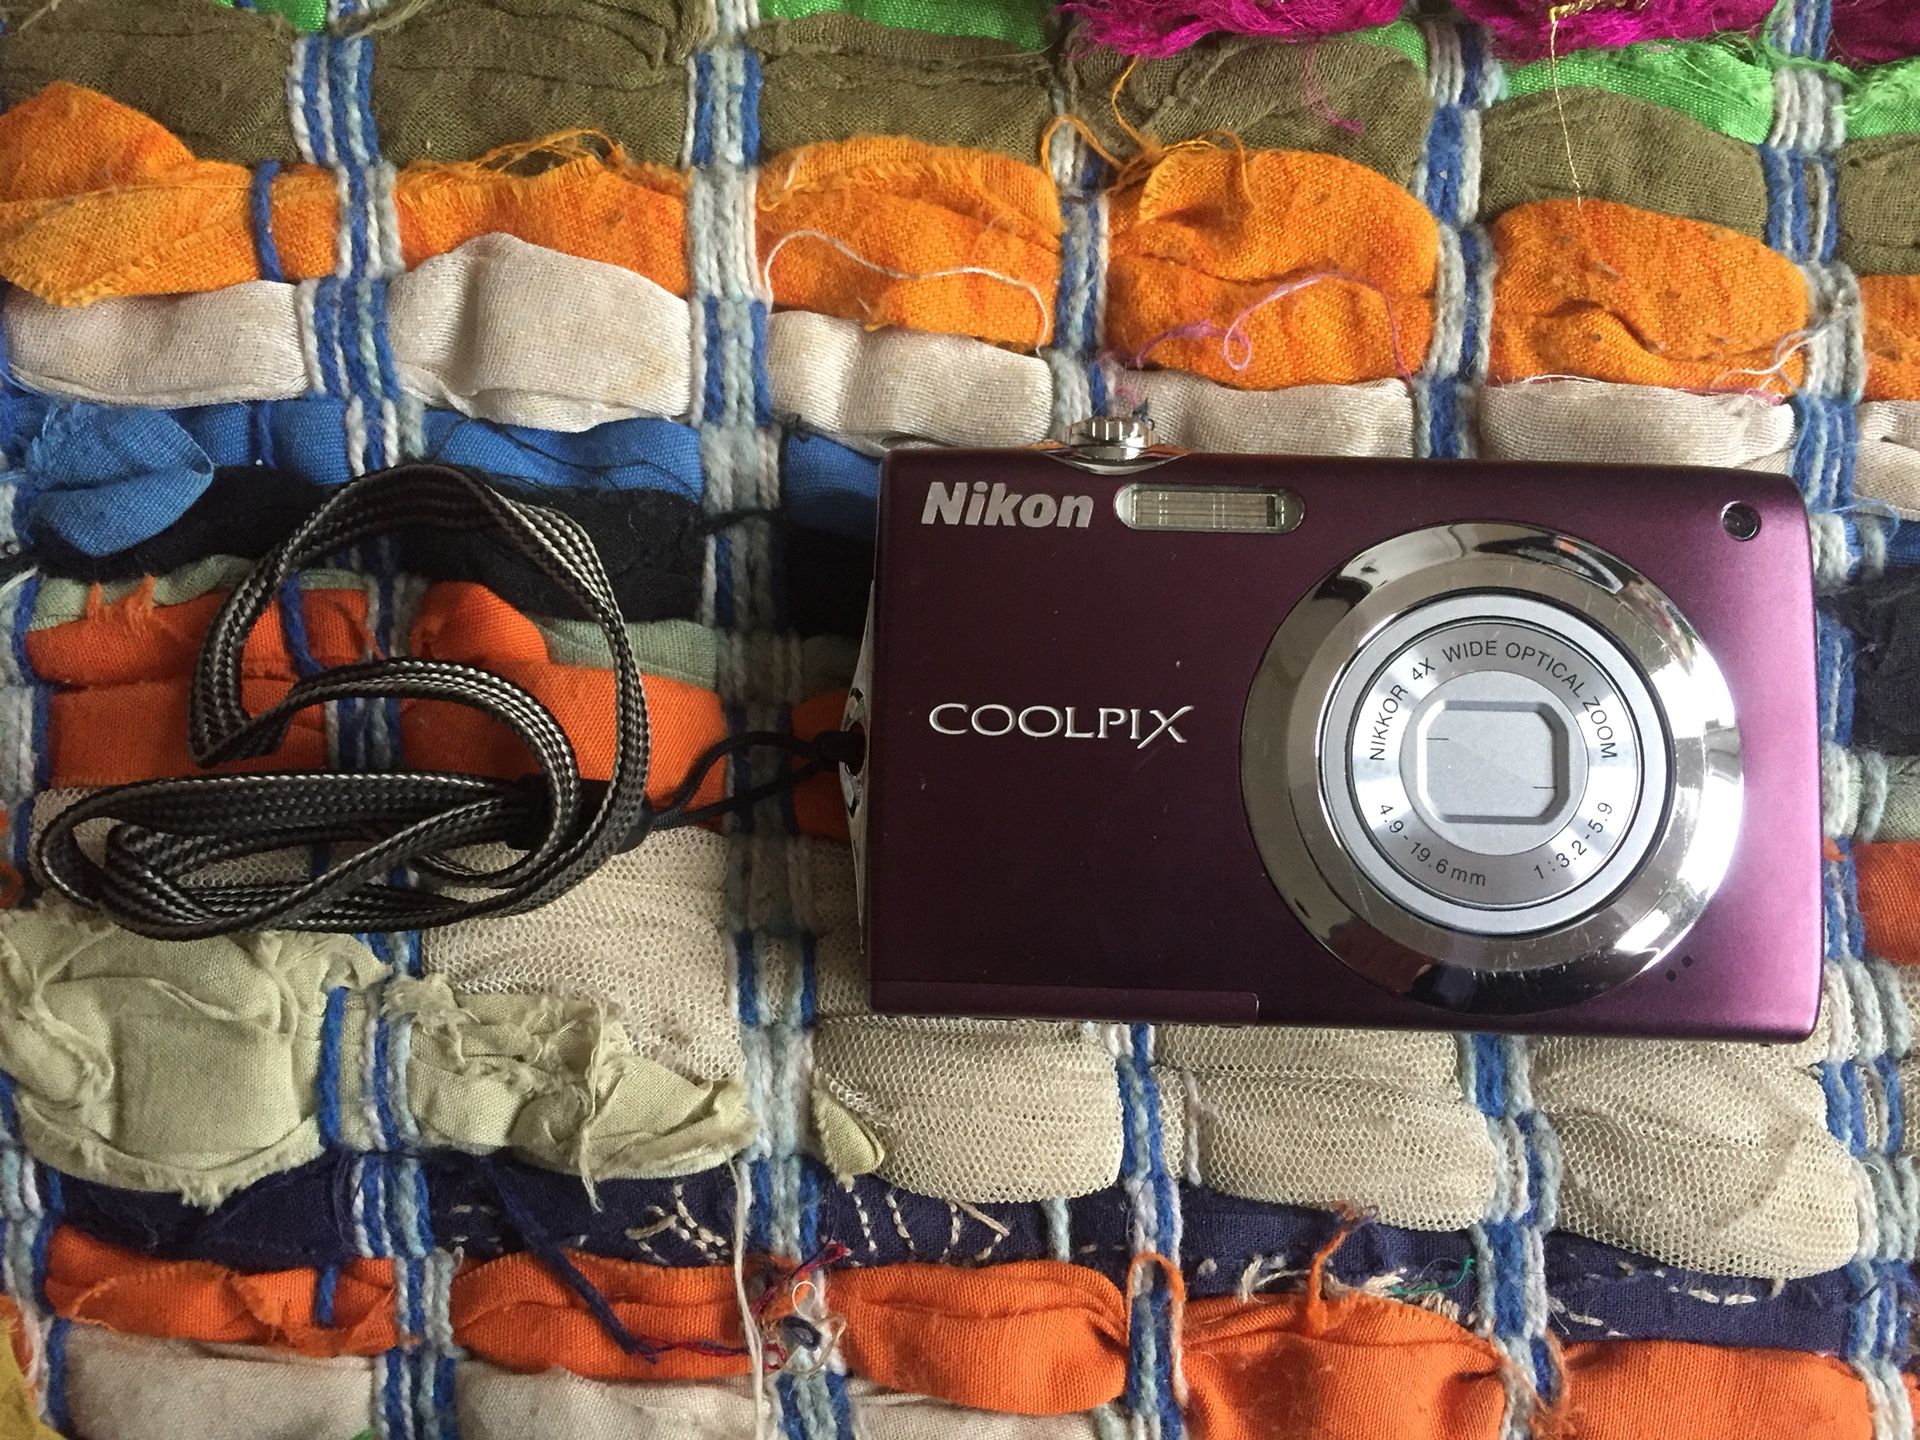 Nikon COOLPIX S3000 digital camera